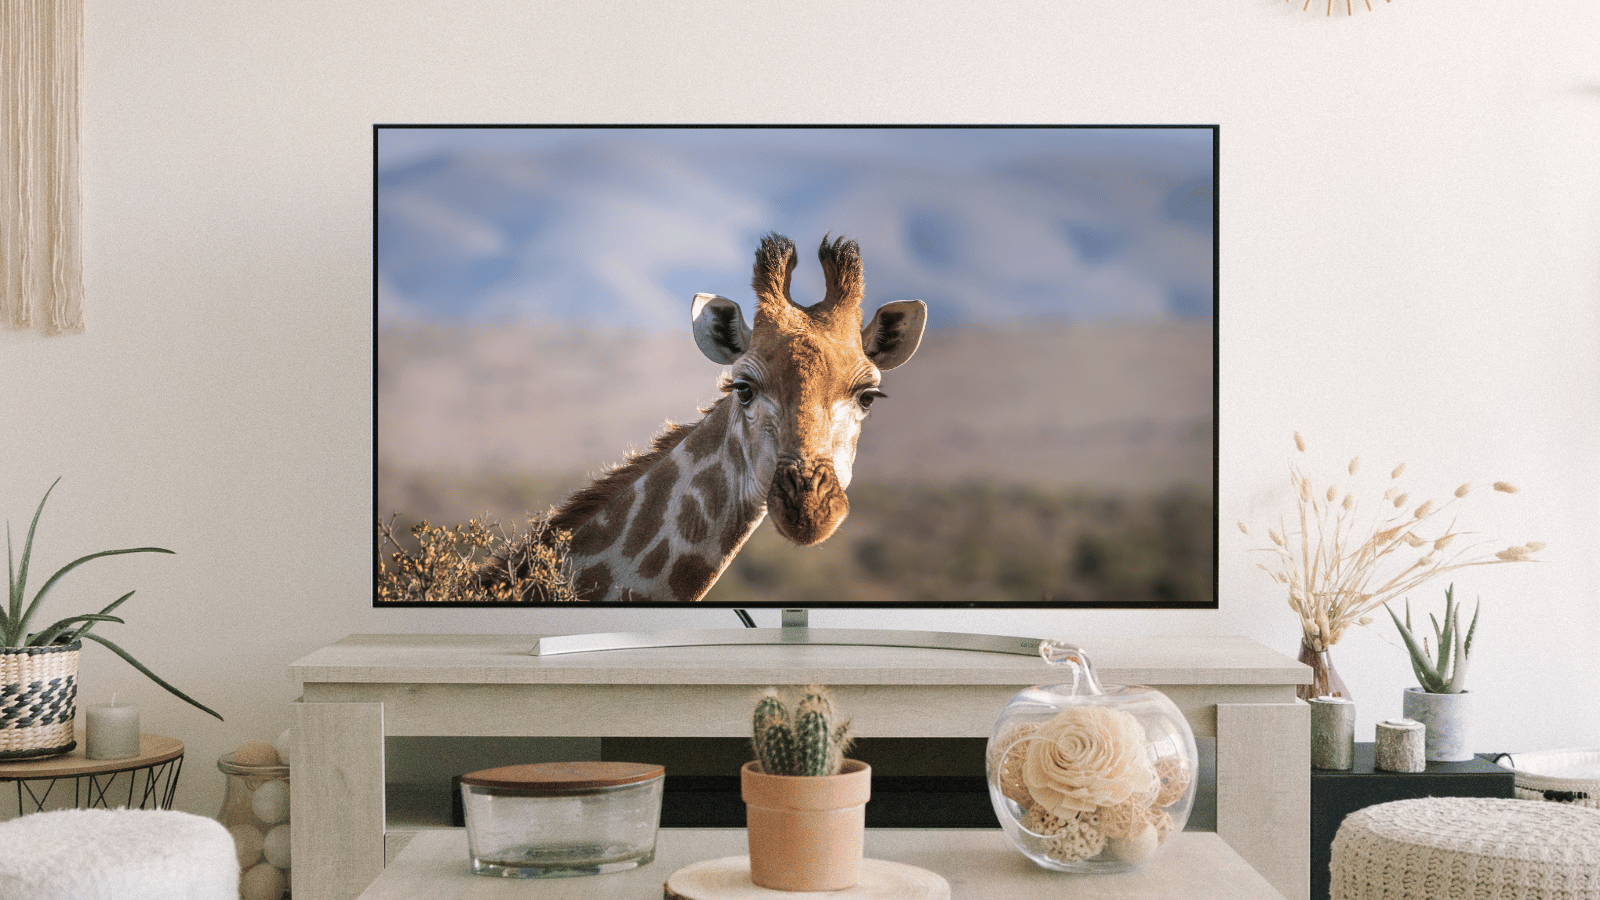 Safari on TV (WildEarth)